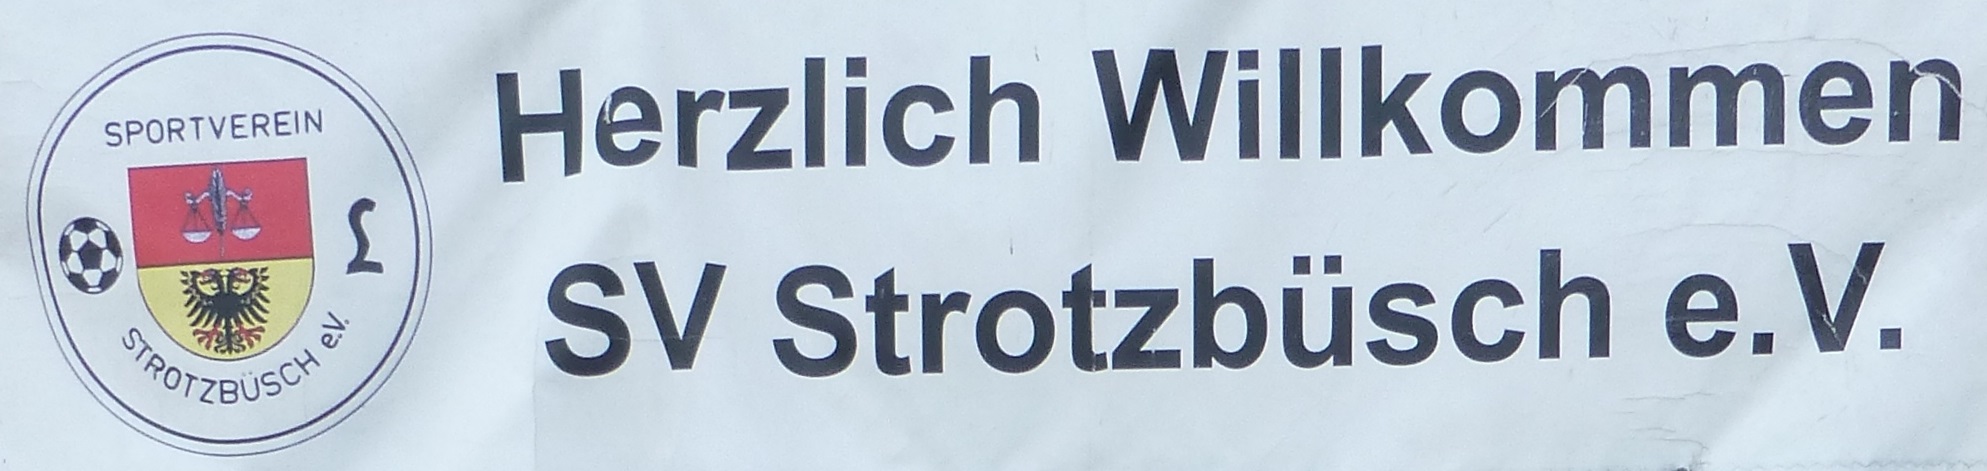 Ortsgemeinde Strotzbuesch Sportverein